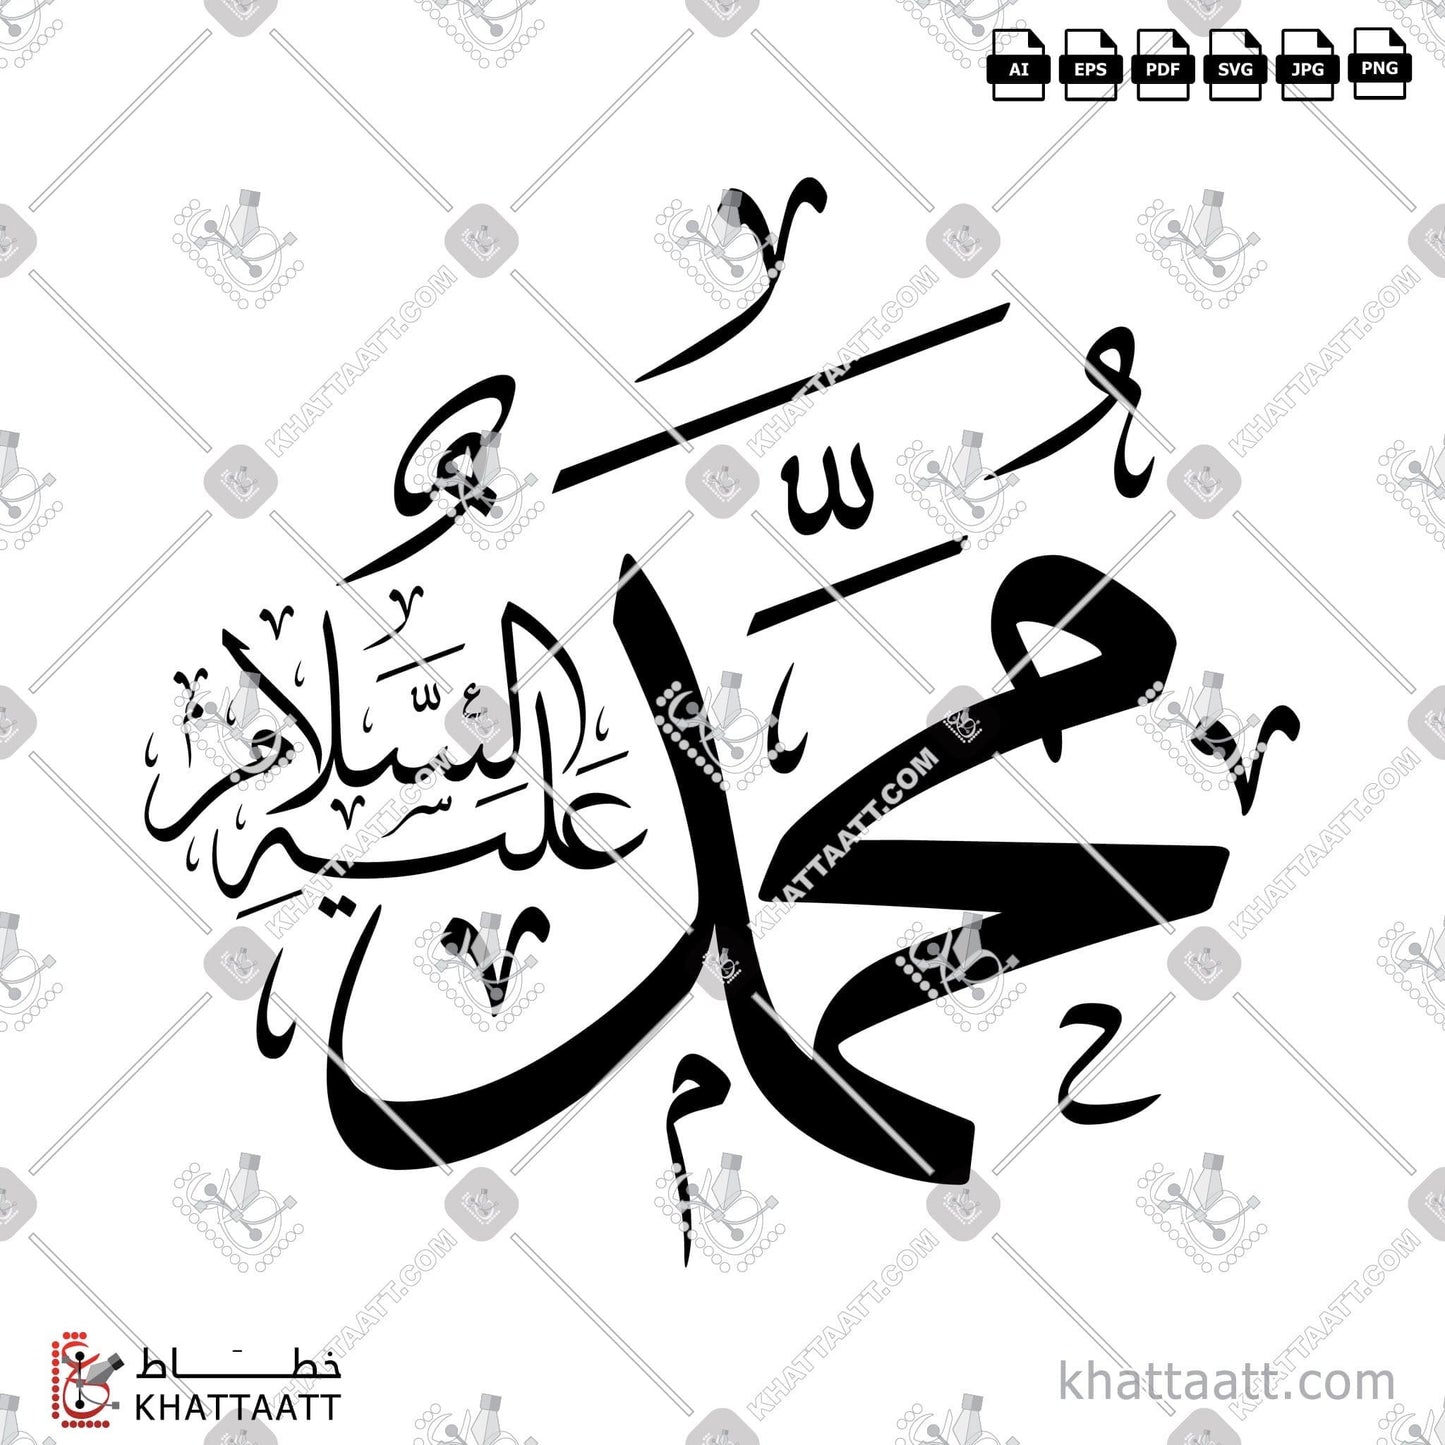 Arabic Calligraphy Vector, Muhammad (ﷺ), Thuluth Script, الخط العربي, خط الثلث, محمد صلى الله عليه وسلم, محمد ﷺ KHATTAATT